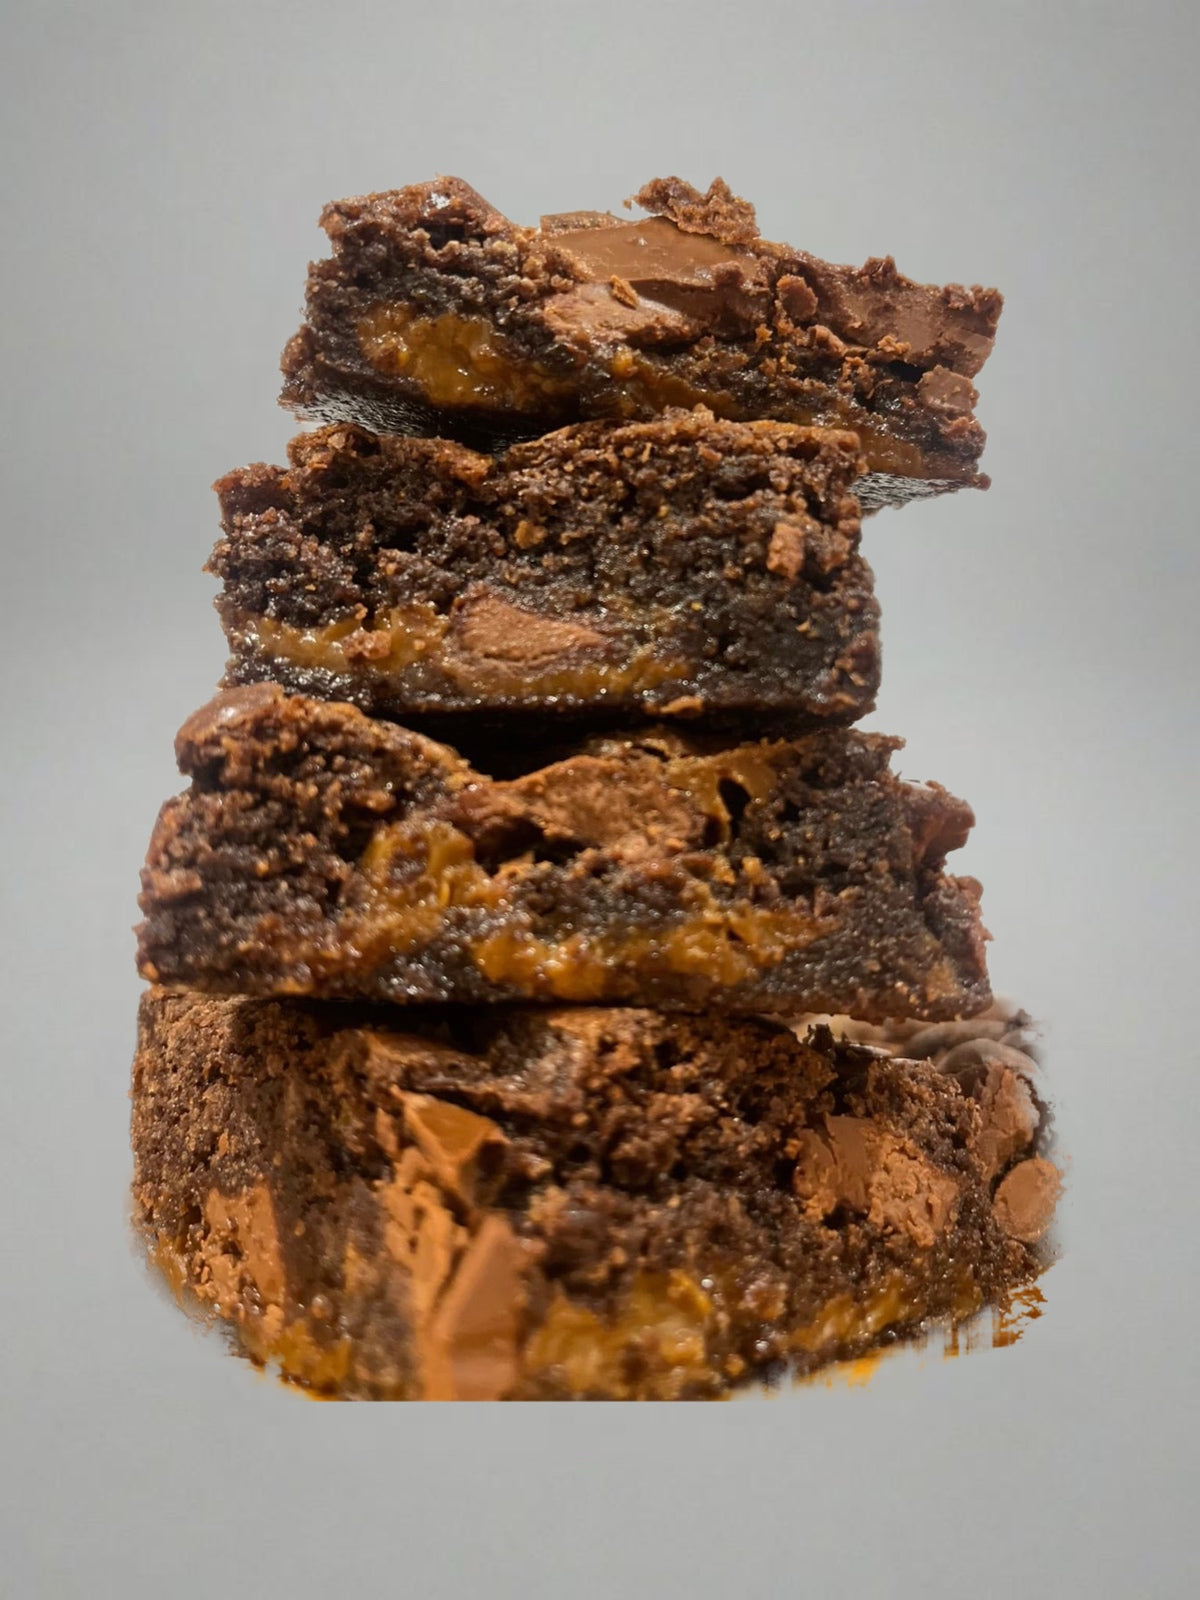 Caramel Brownies